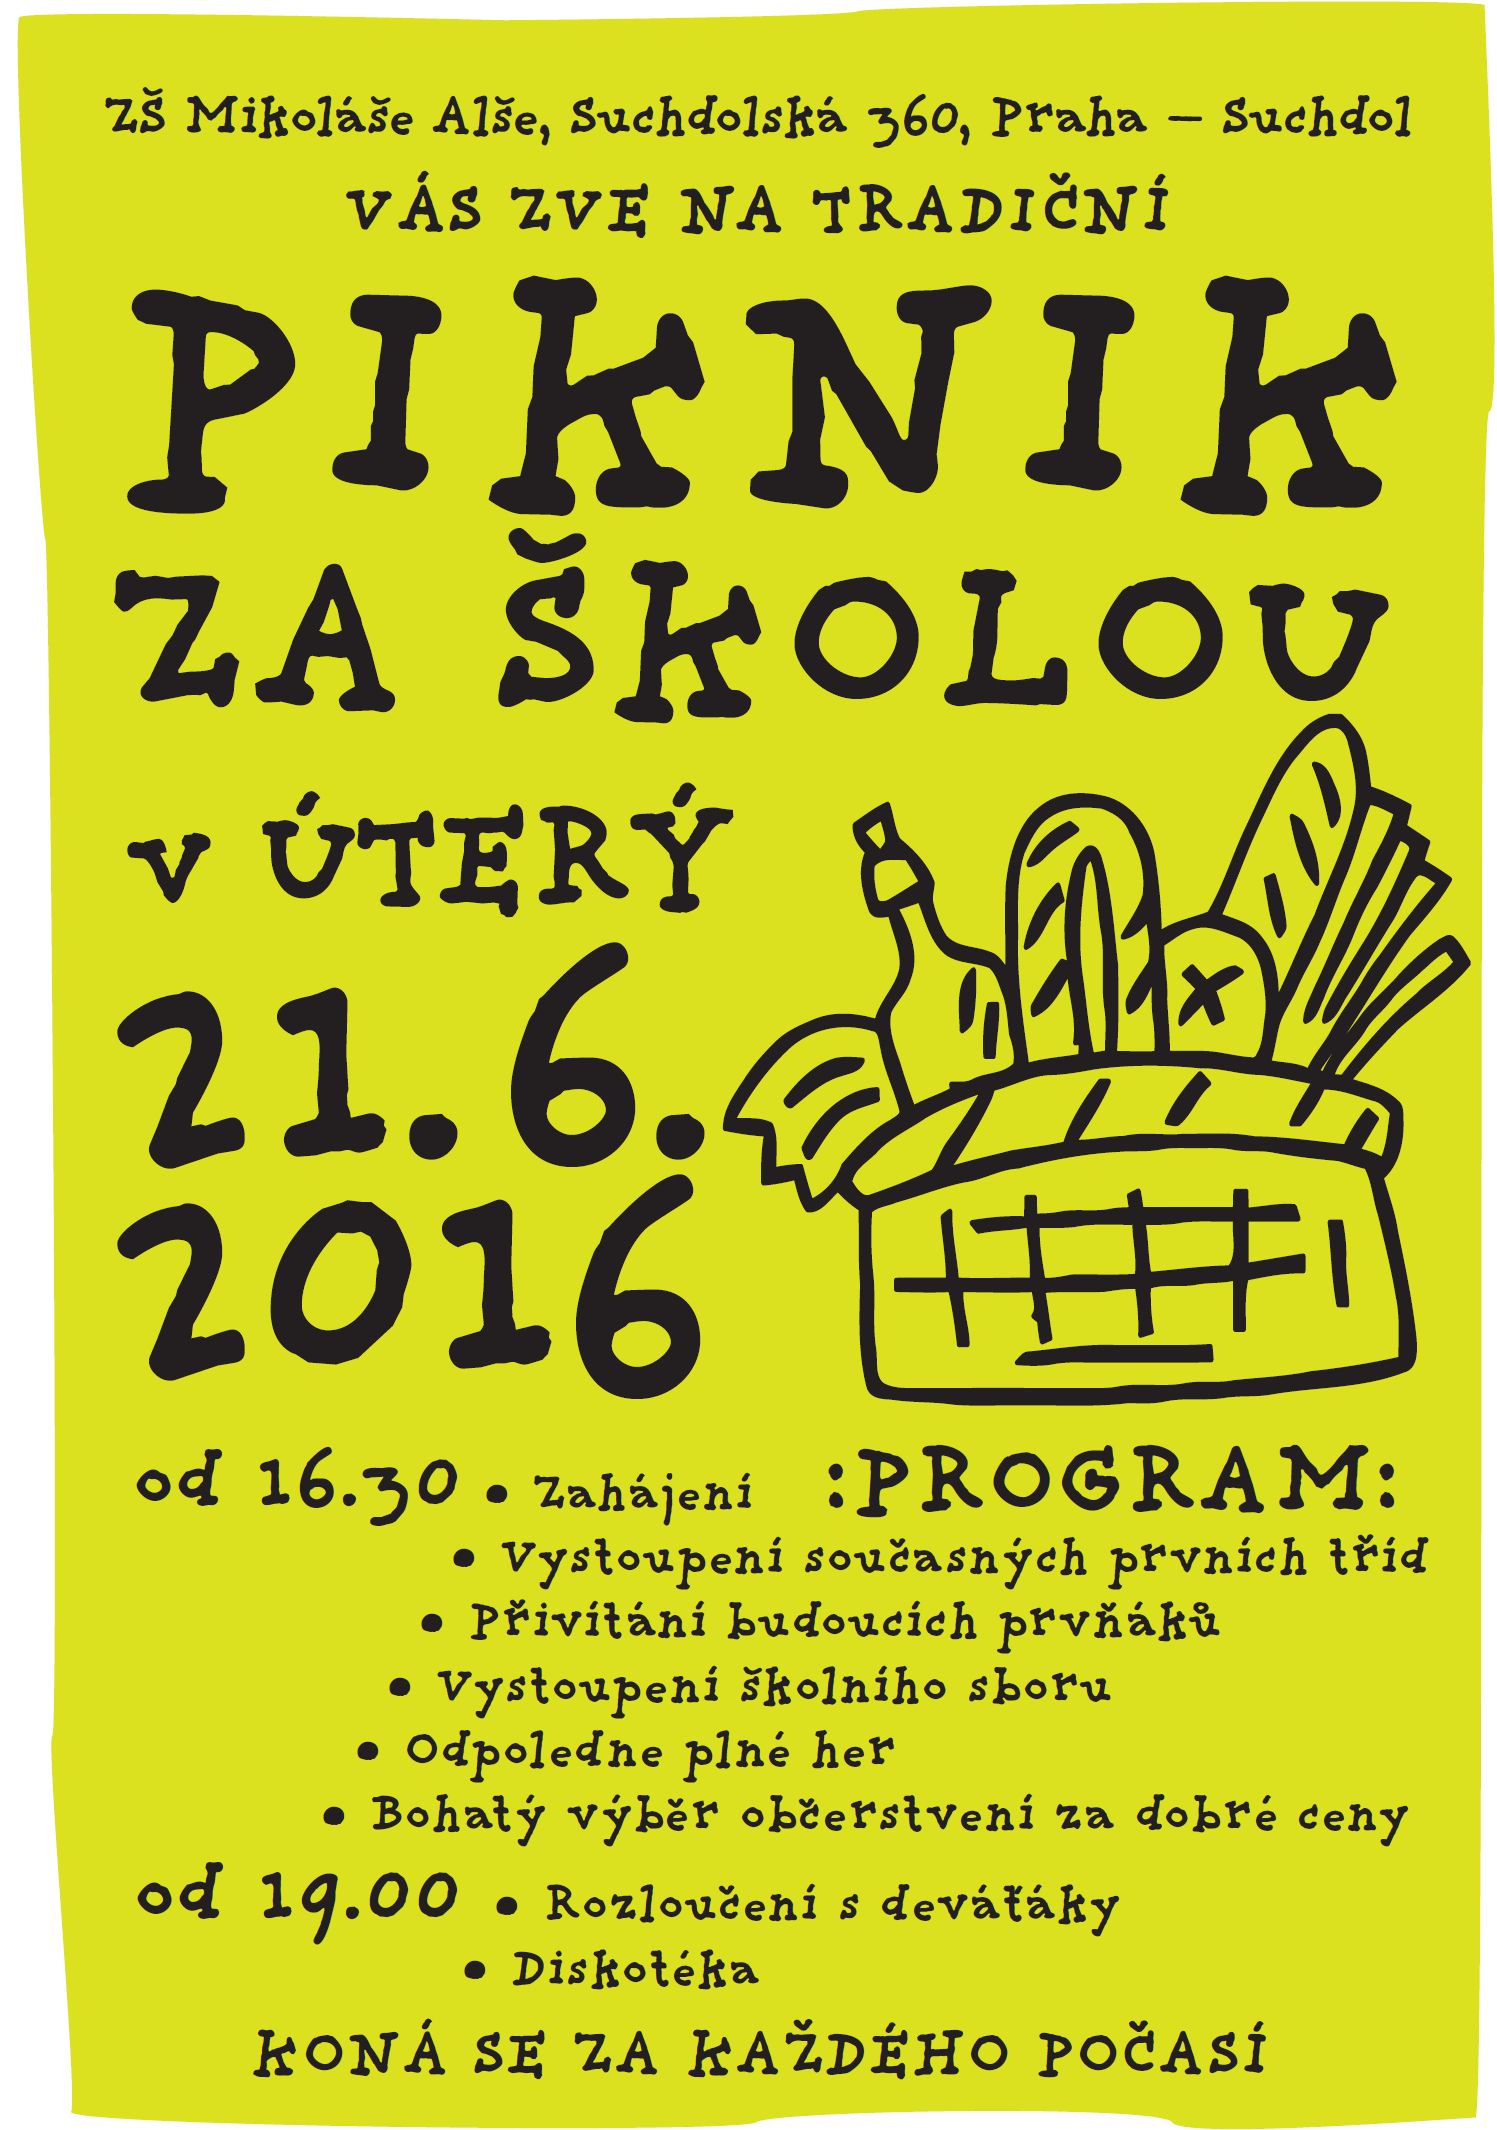 Piknik za školou, úterý 21.6.2016 ZŠ M.Alše